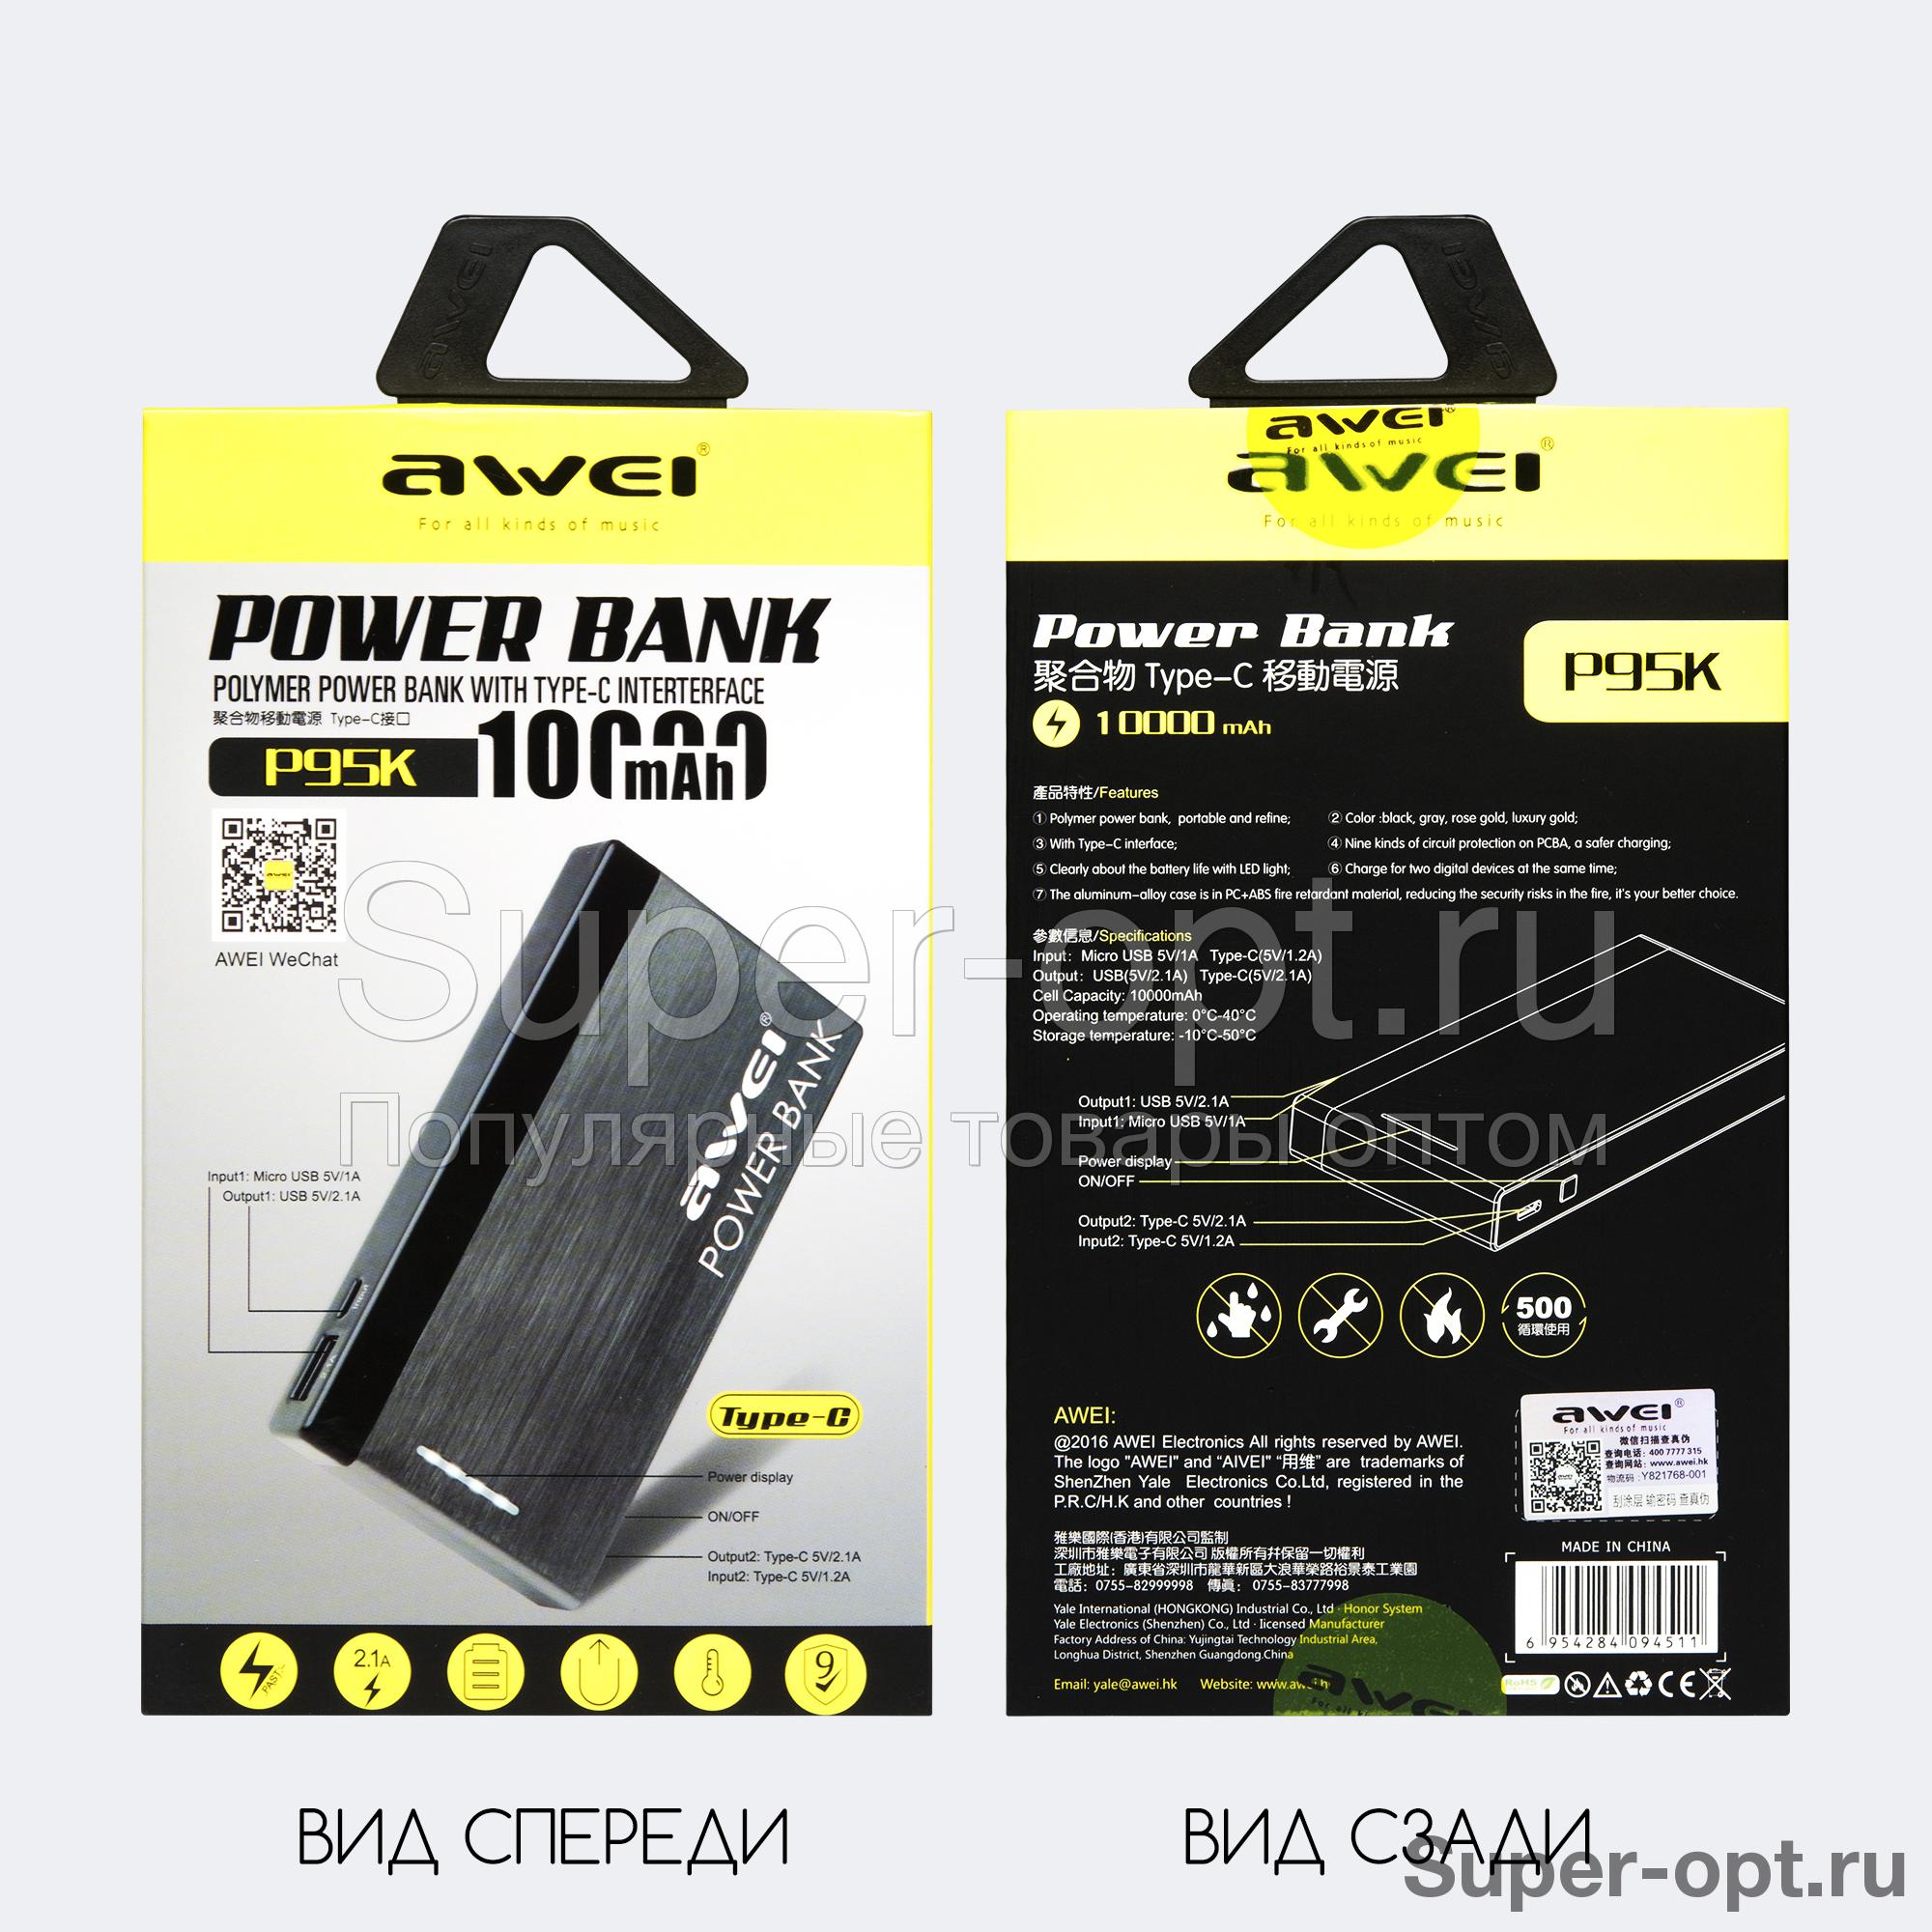 Power Bank Awei P95K 10000 mAh